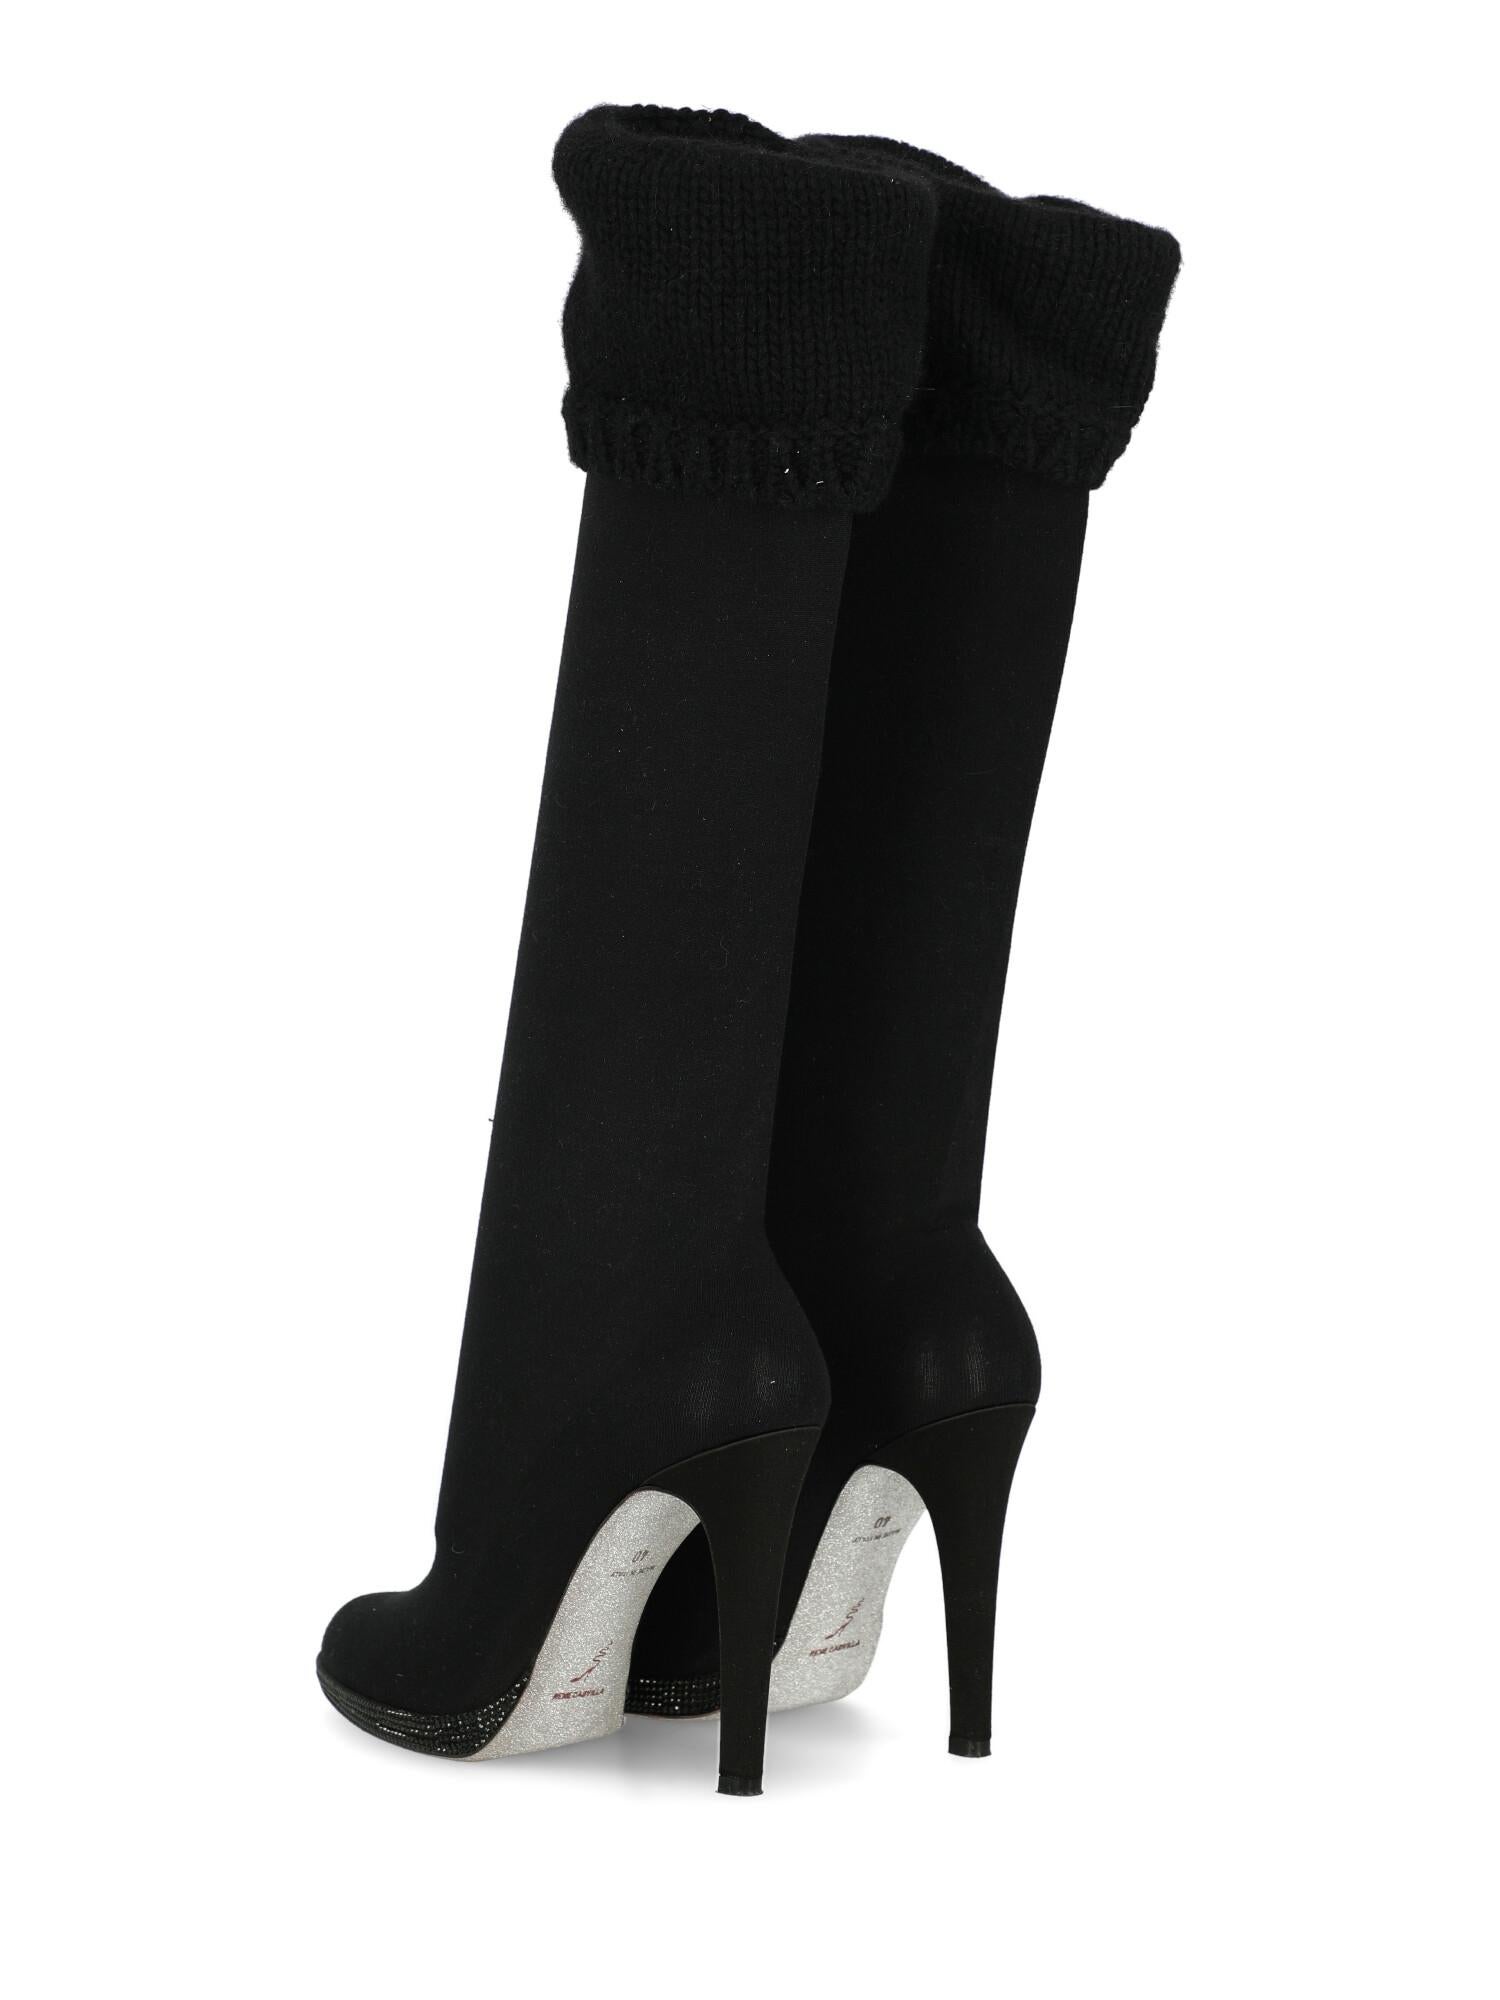 Women's Rene Caovilla Woman Boots Black Wool IT 40 For Sale